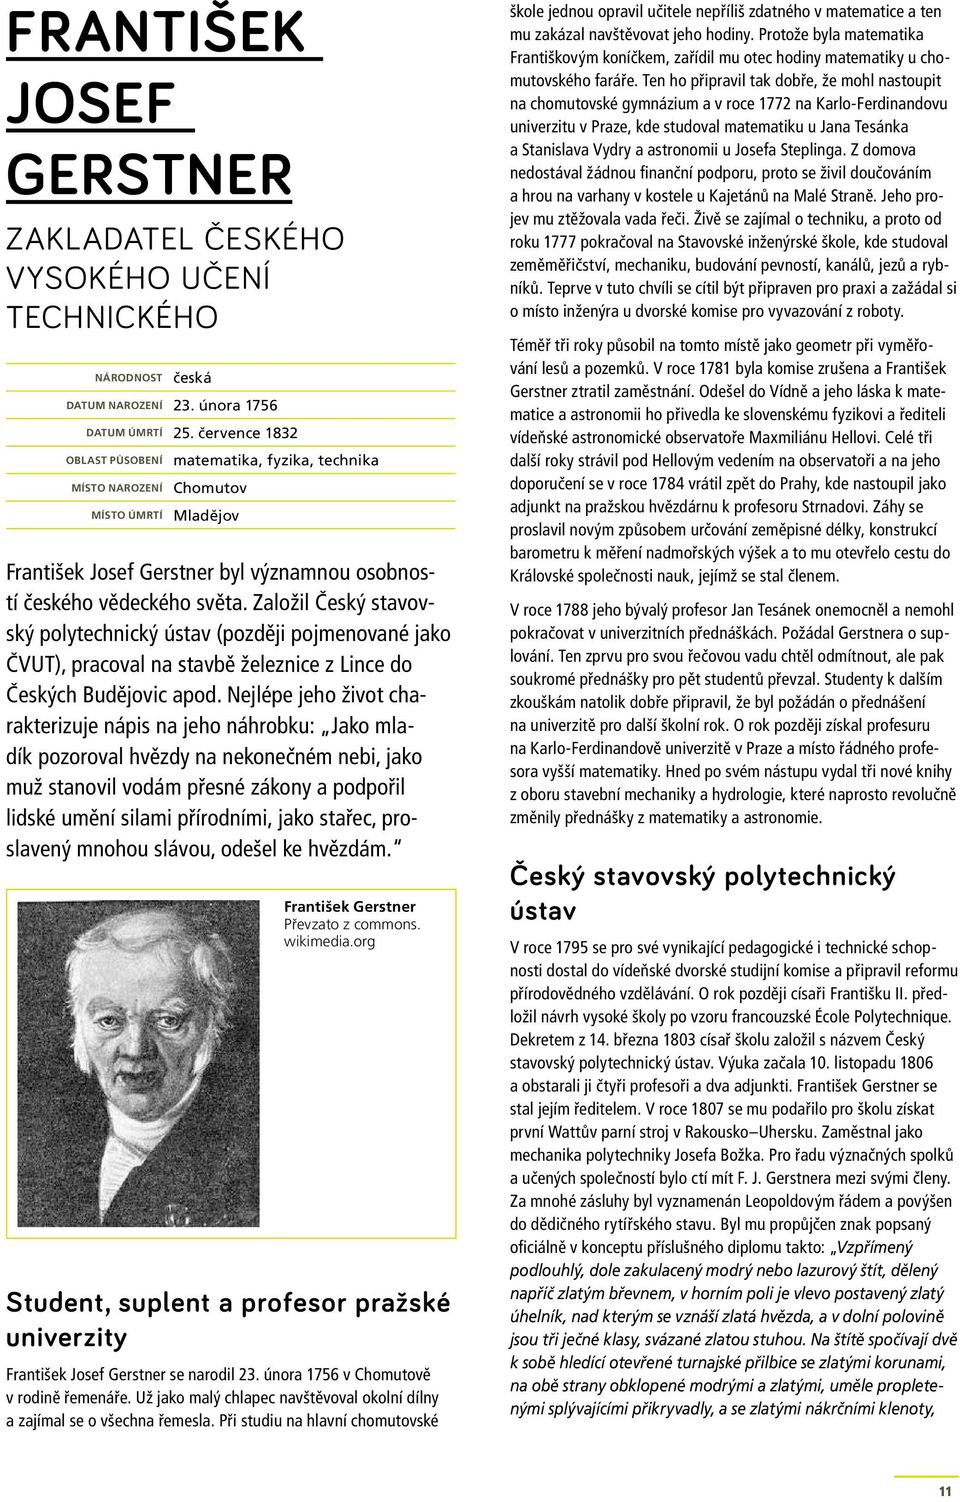 Založil Český stavovský polytechnický ústav (později pojmenované jako ČVUT), pracoval na stavbě železnice z Lince do Českých Budějovic apod.